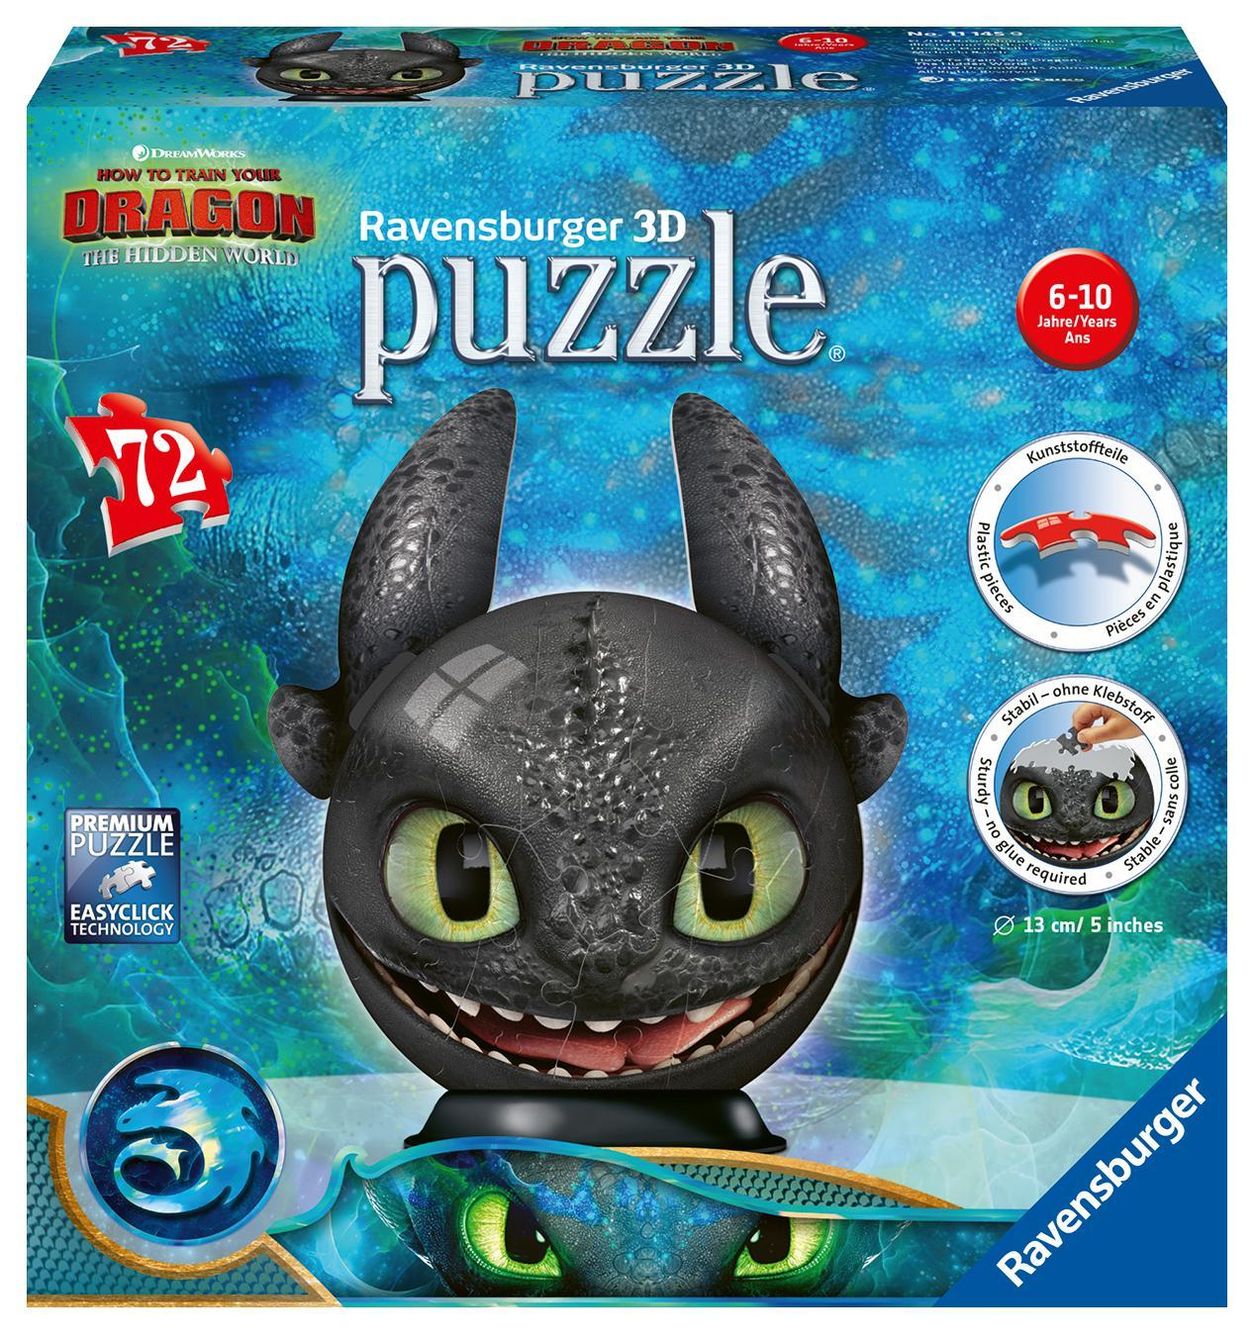 3D-Puzzle DRAGONS 3 – OHNEZAHN MIT OHREN 72-teilig kaufen